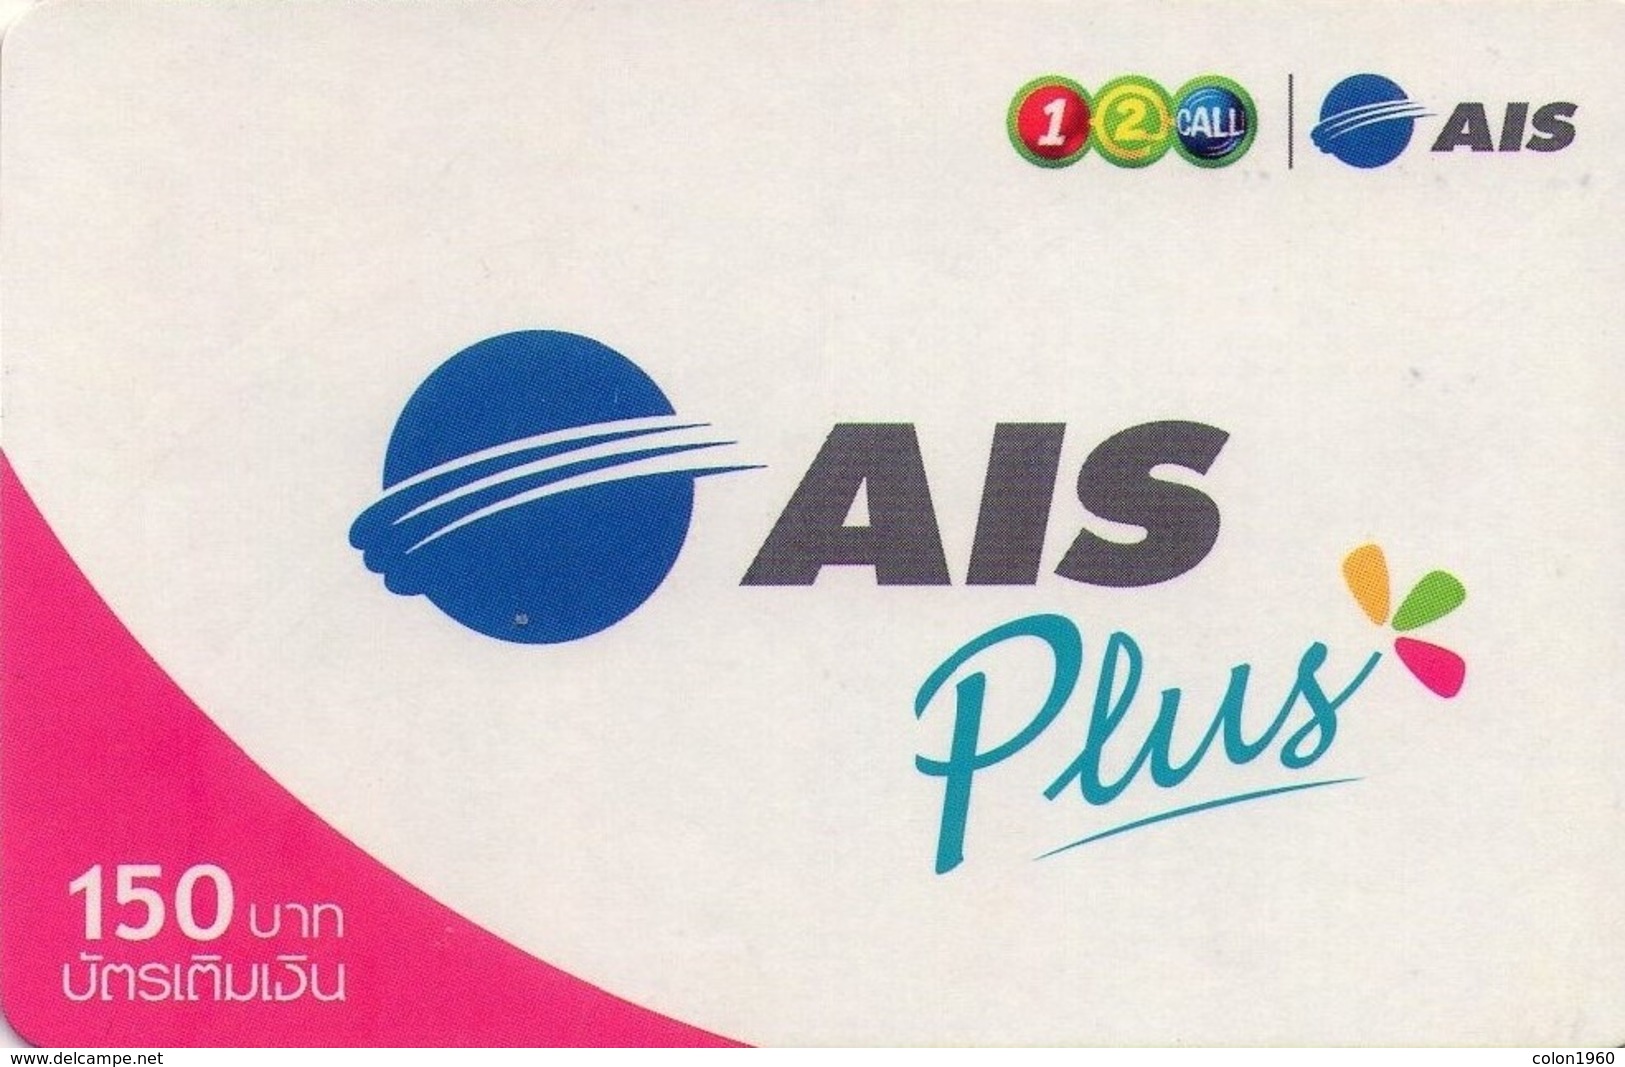 TAILANDIA. AIS Plus-04. 150 ฿. 06/2008. TH-12Call-1112 B. (035) - Thaïlande